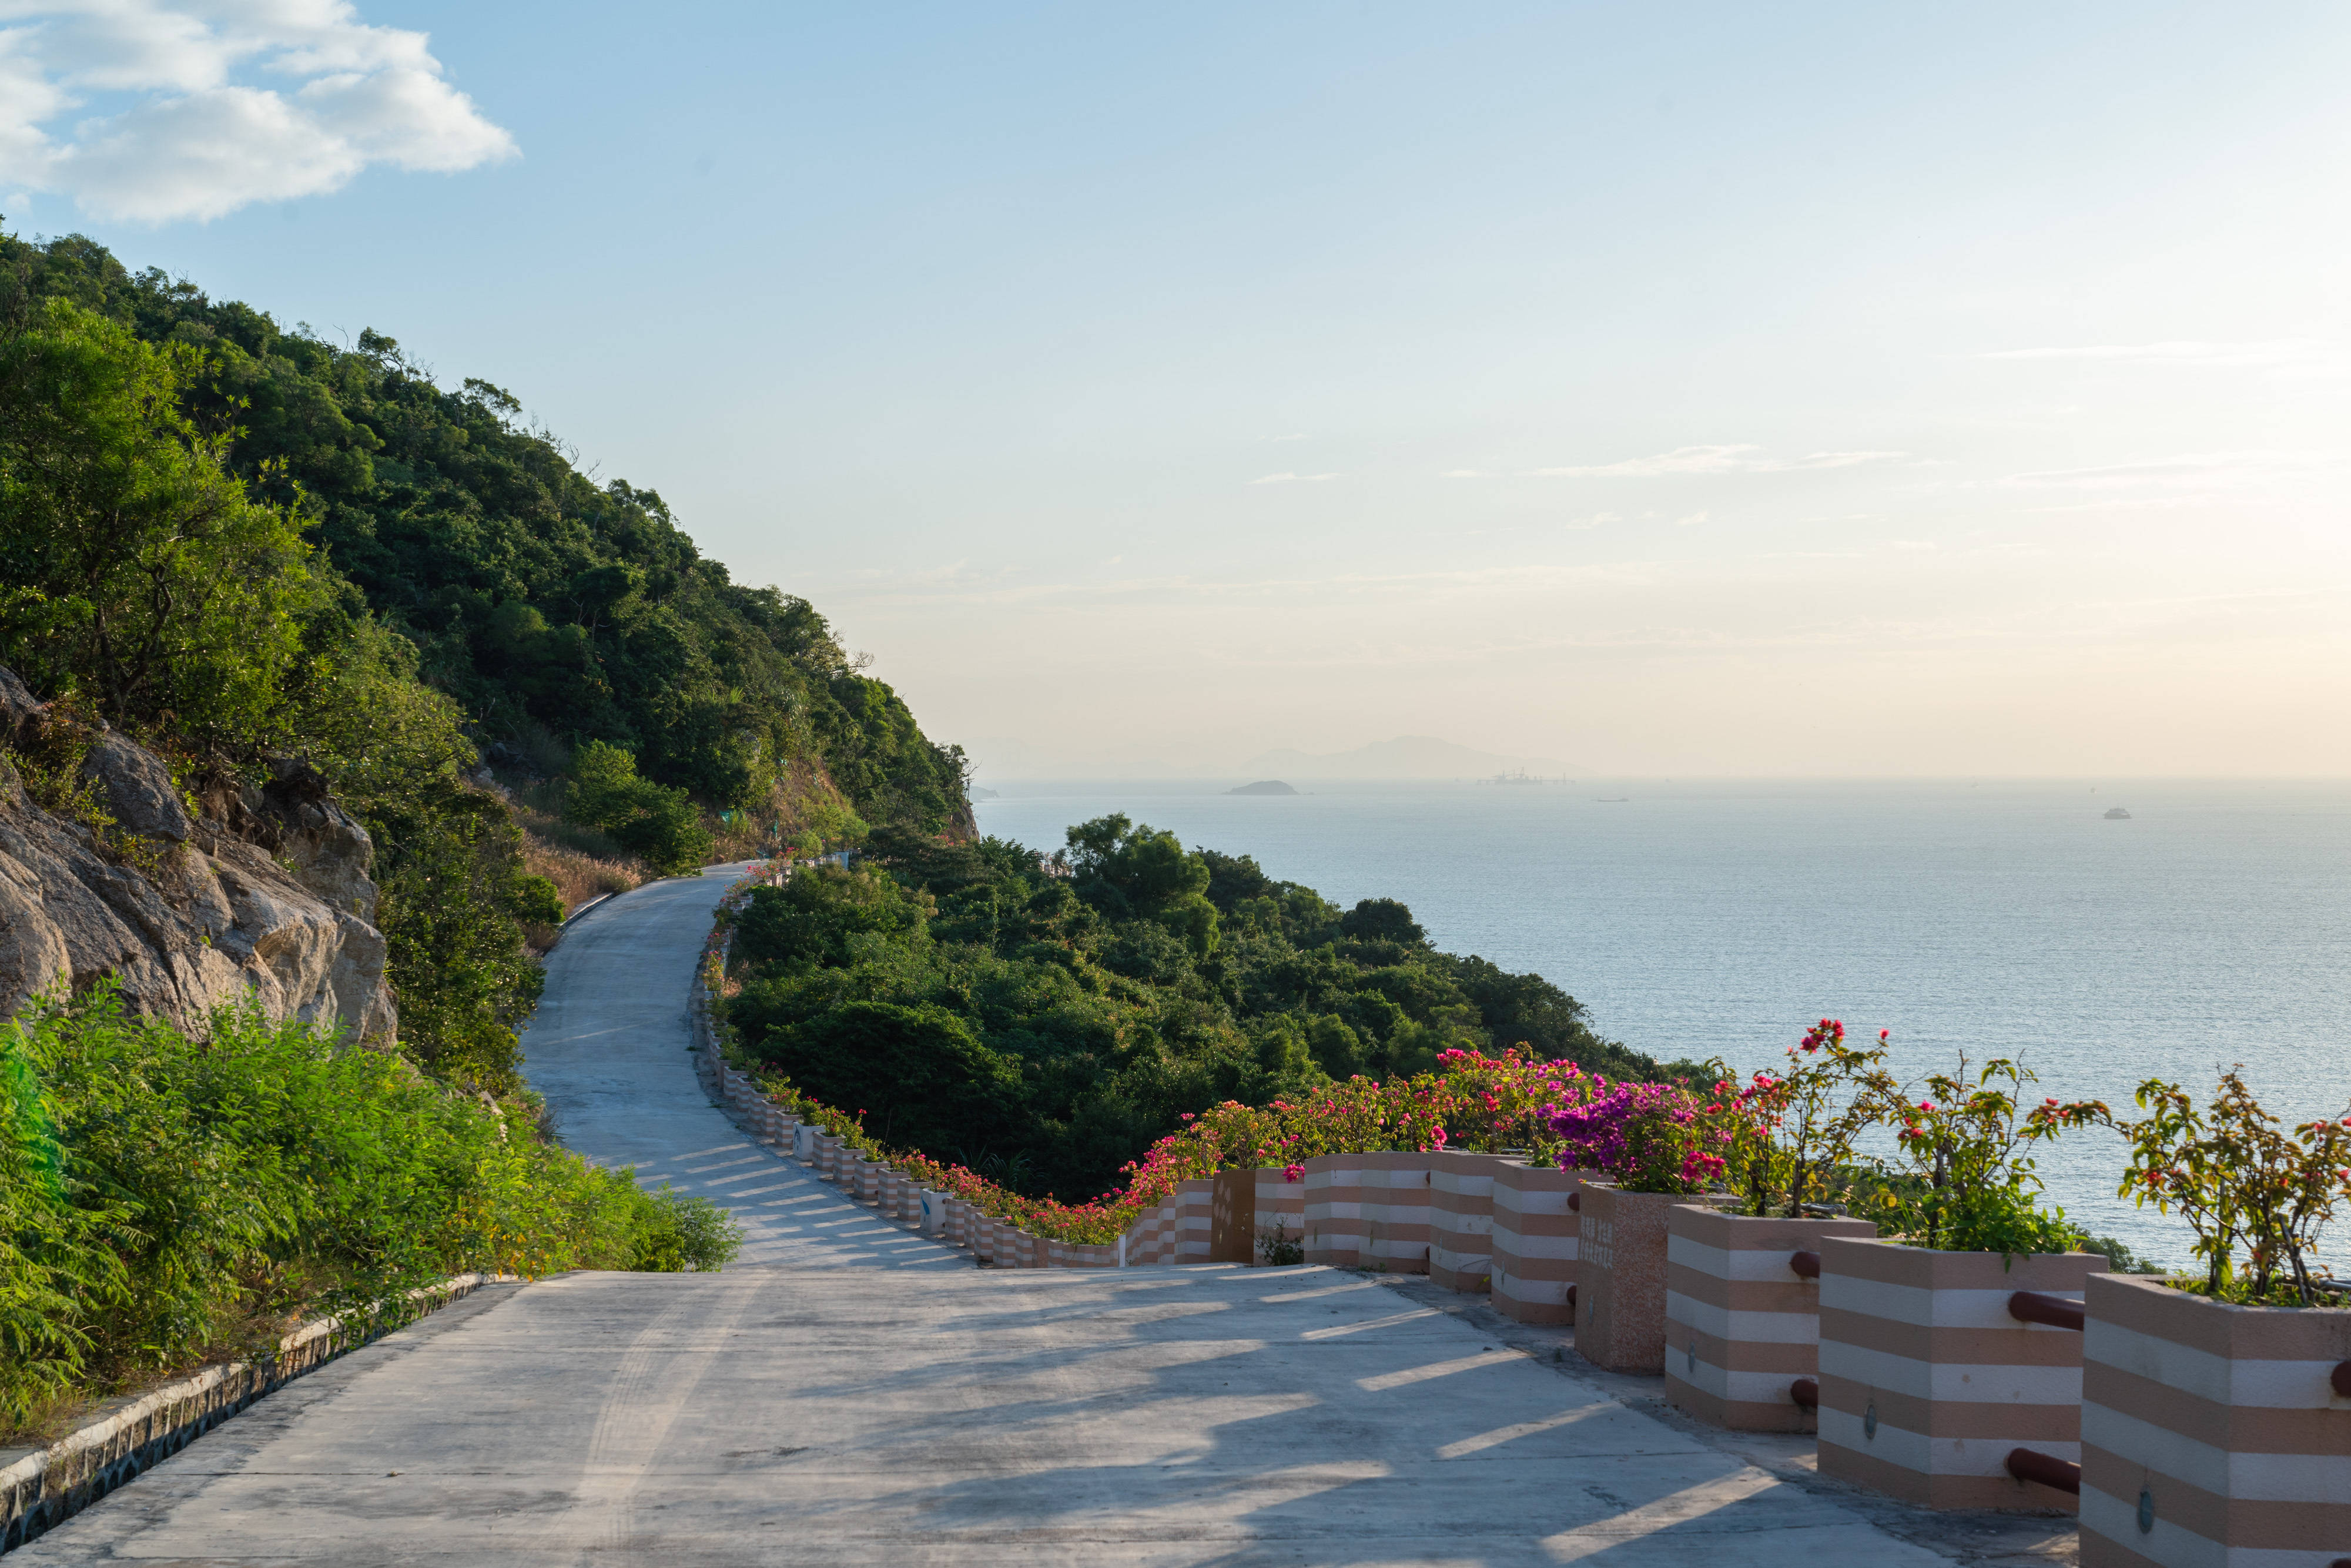 隔海远眺香港大屿山,珠海这一环岛公路五一开通